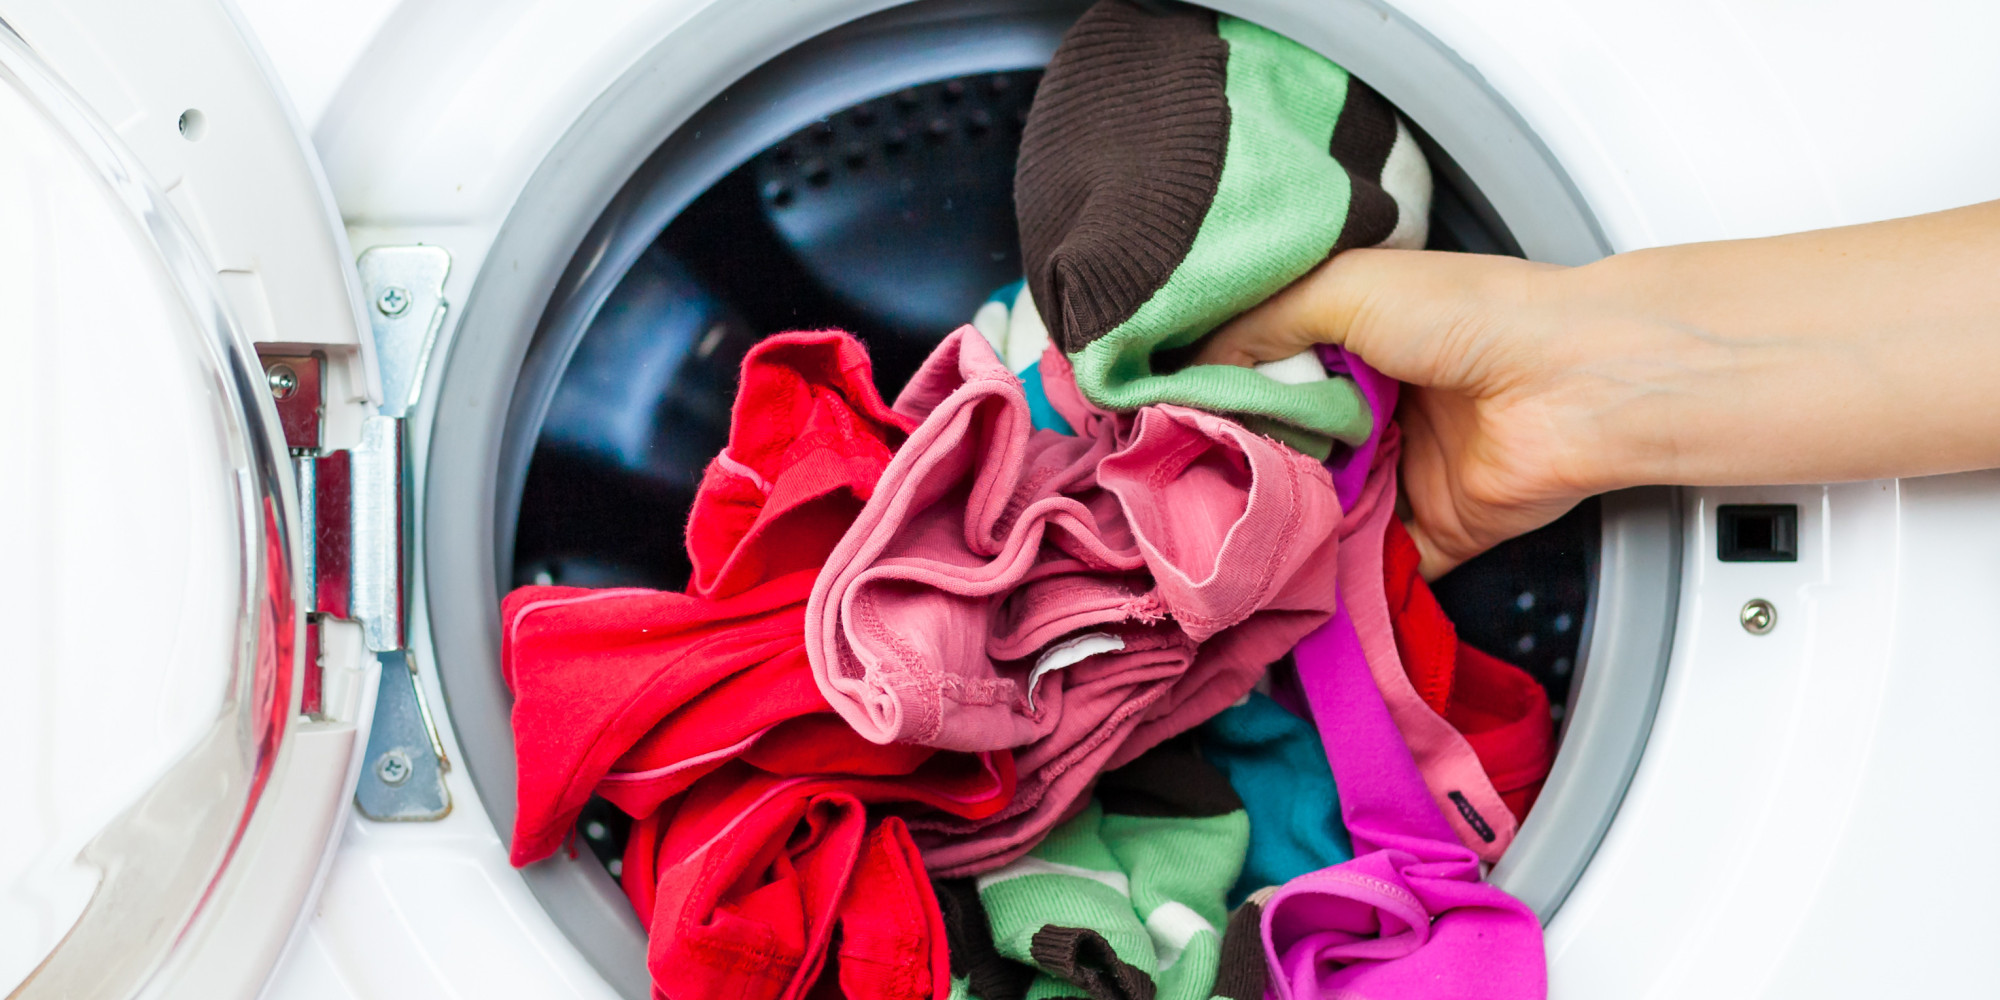  Quần áo bị rối trước khi giặt giũ